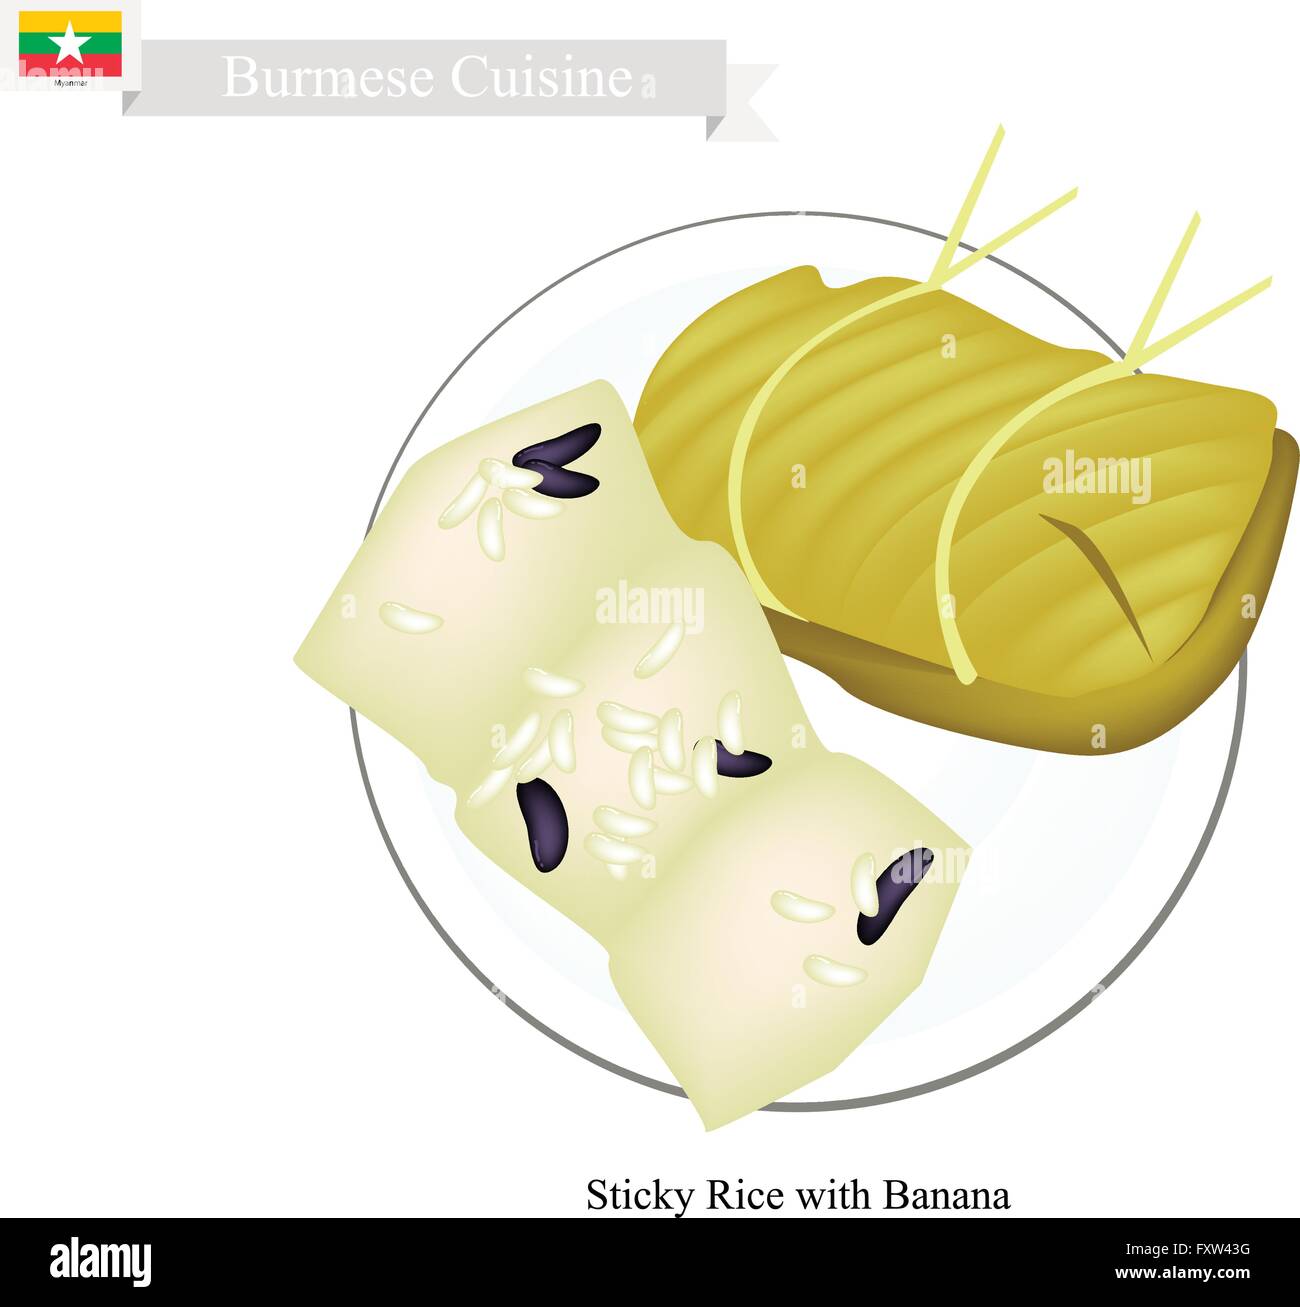 Burmesische Küche, Bananen in klebrigen Reis wickeln mit Bananenblättern. Eines der beliebtesten Desserts in Myanmar. Stock Vektor